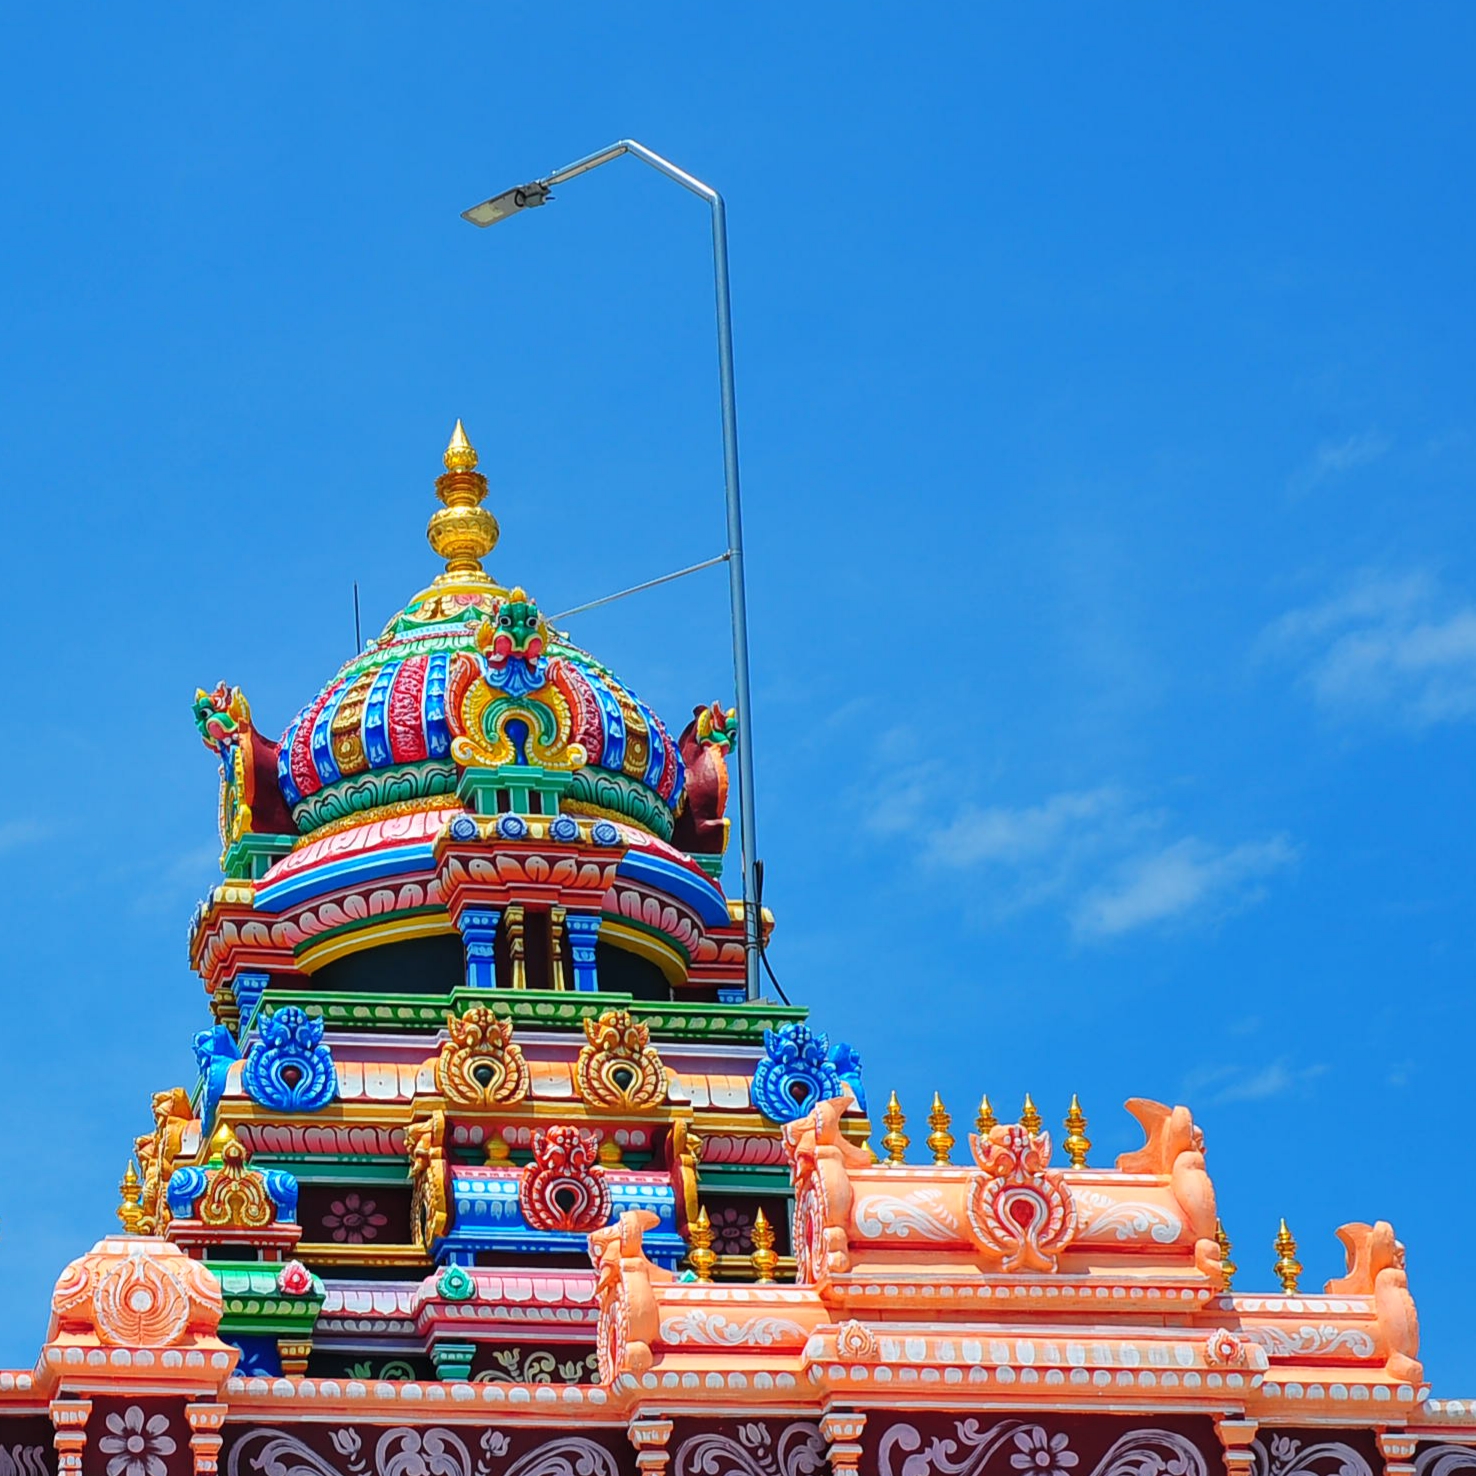 La cima del tempio indiano contro il cielo azzurro...